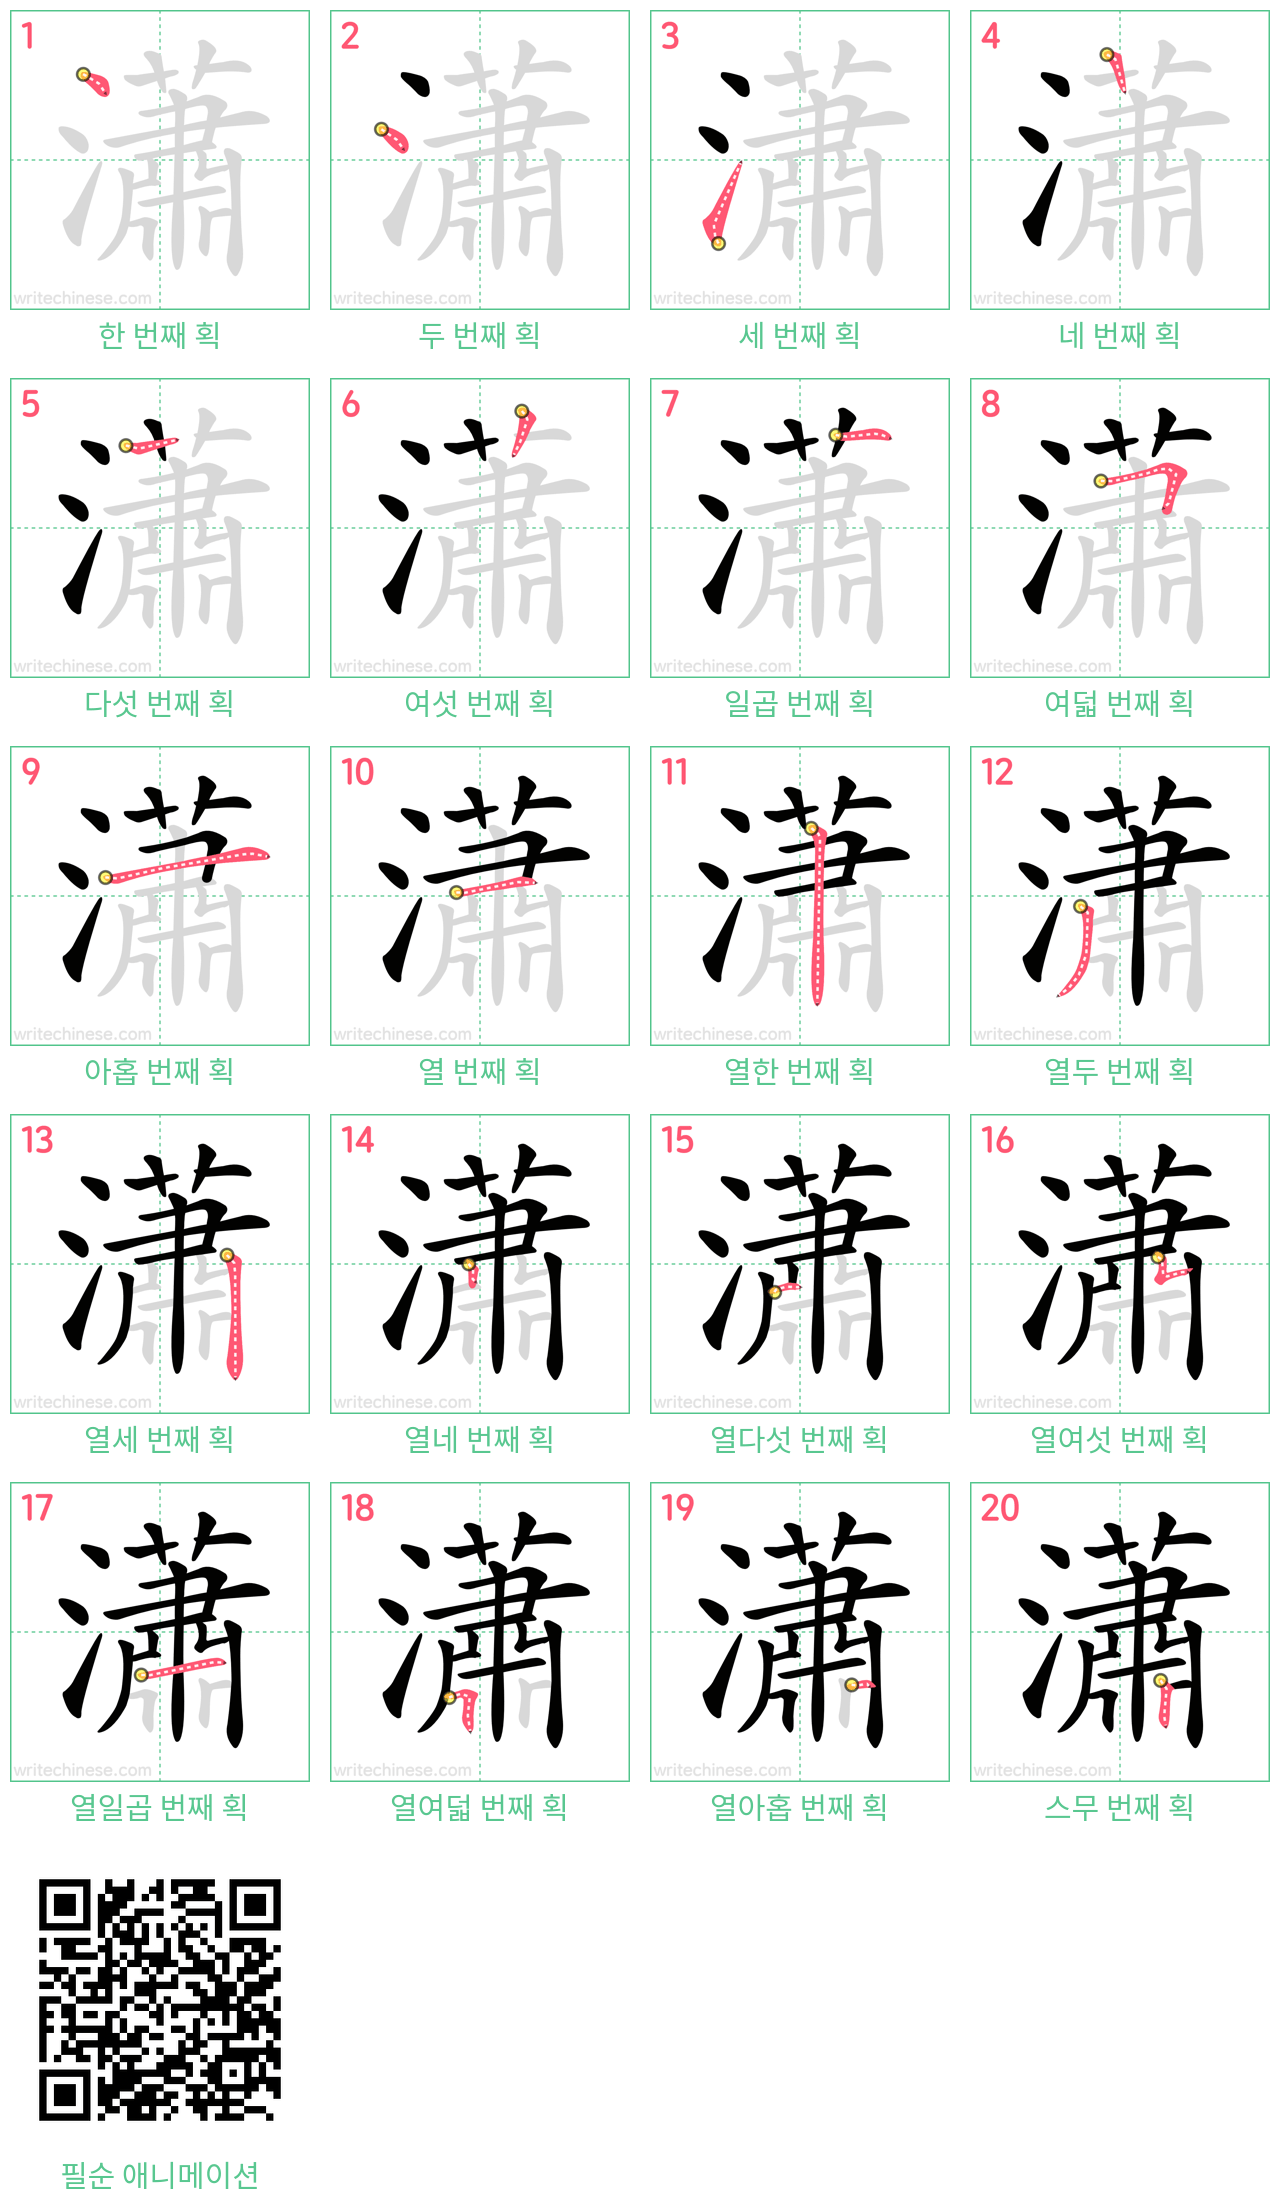 瀟 step-by-step stroke order diagrams